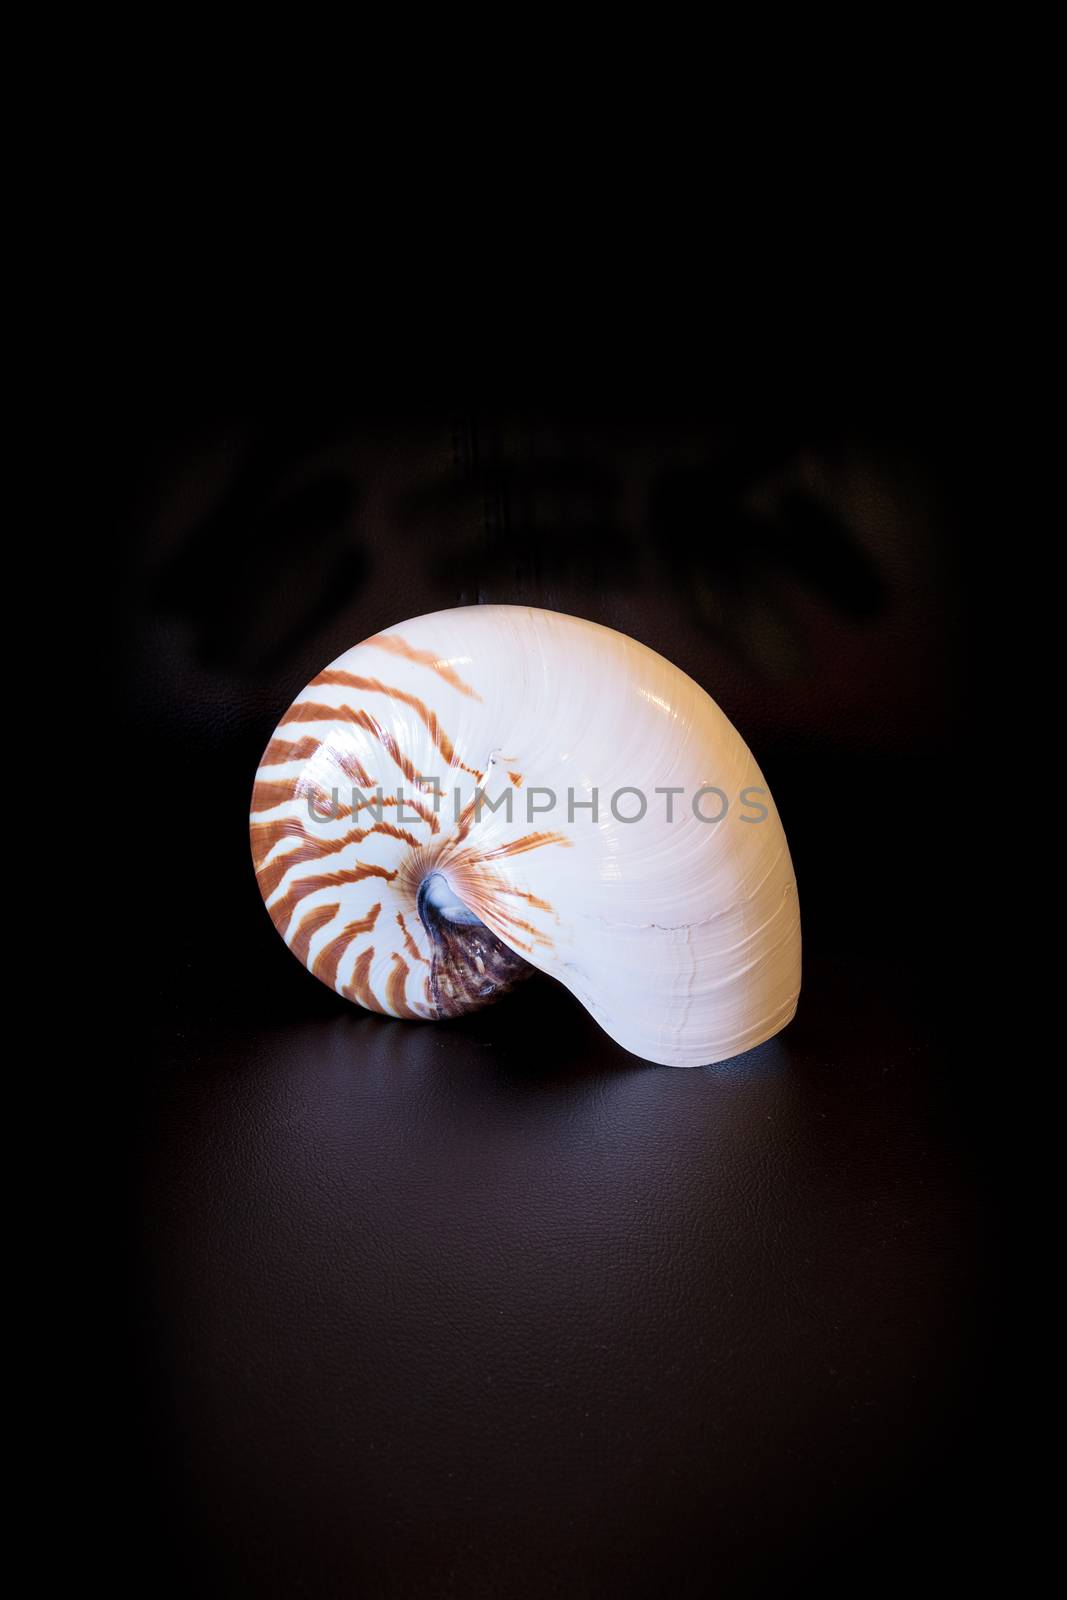 Chambered Nautilus seashell Nautilus pompilius pompilius isolated on a black background